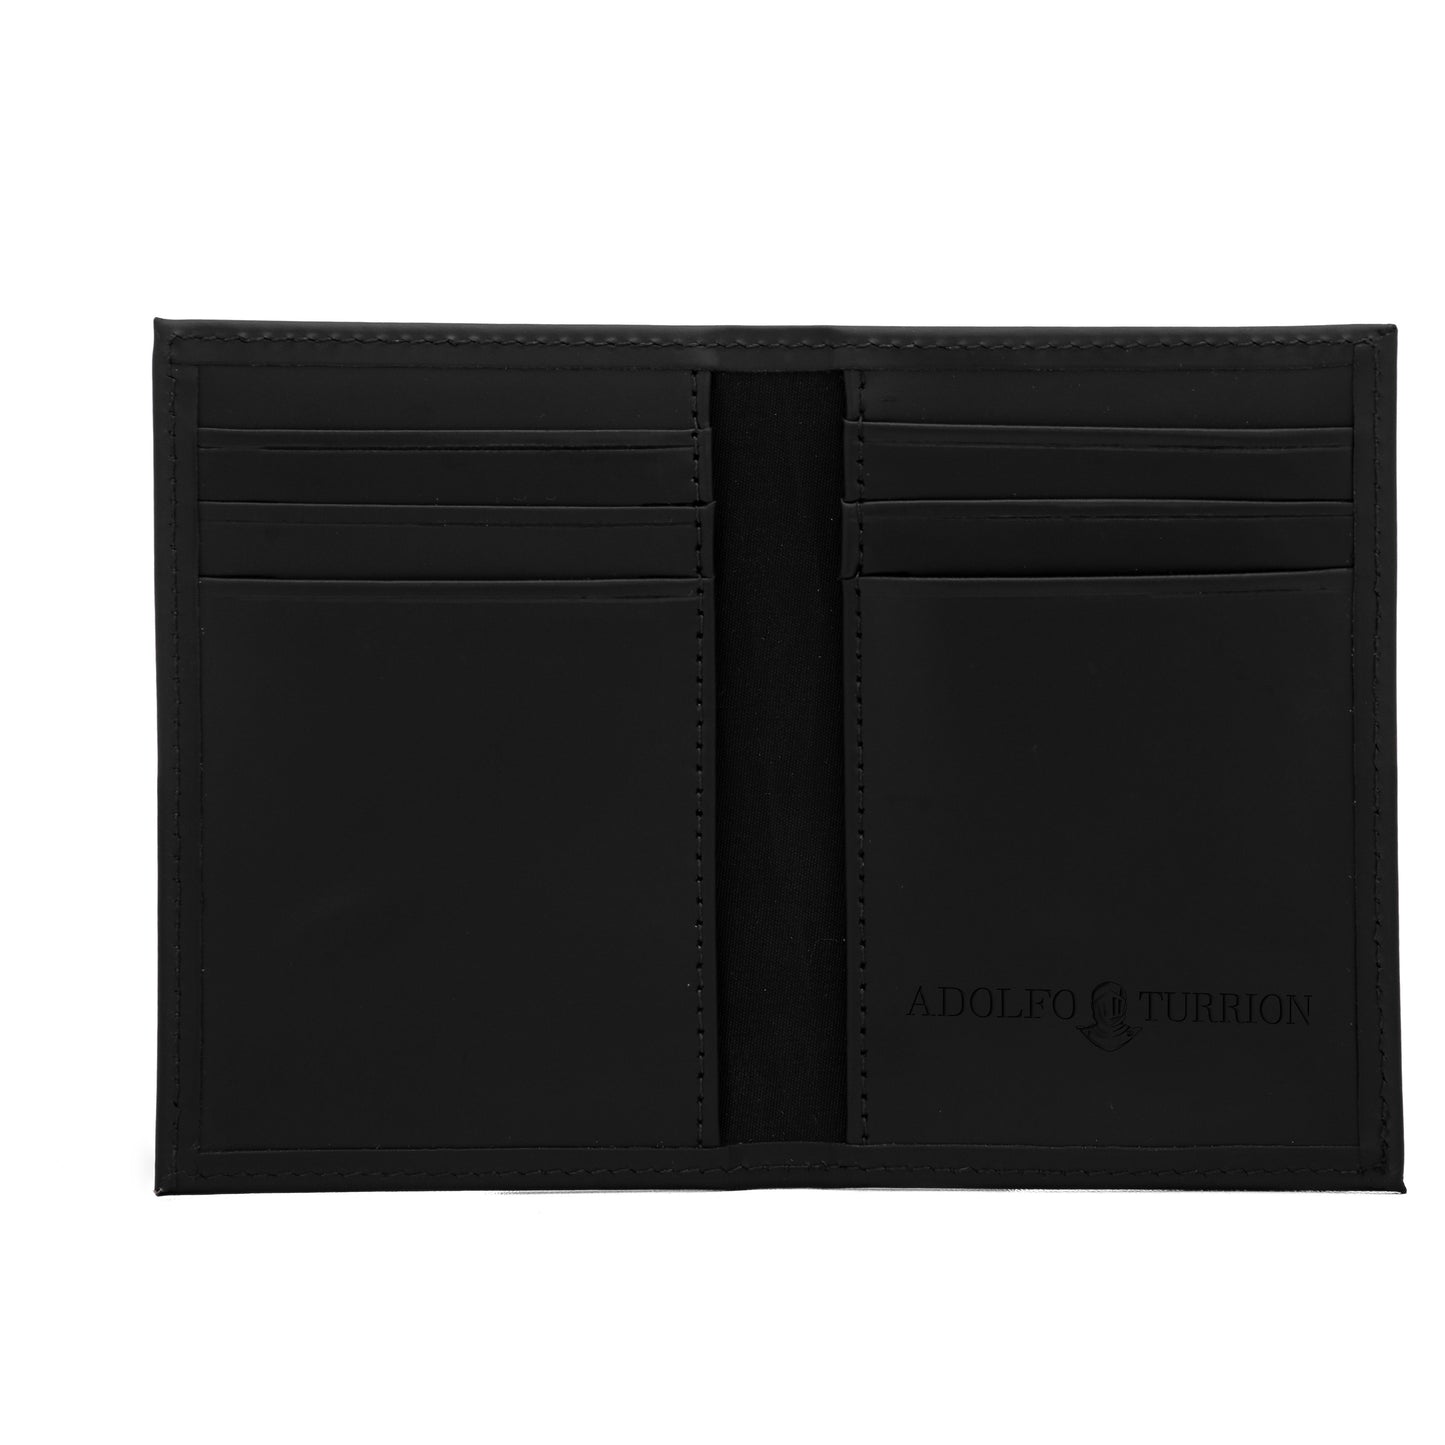 Leather Wallet - Cardholder Palma Black